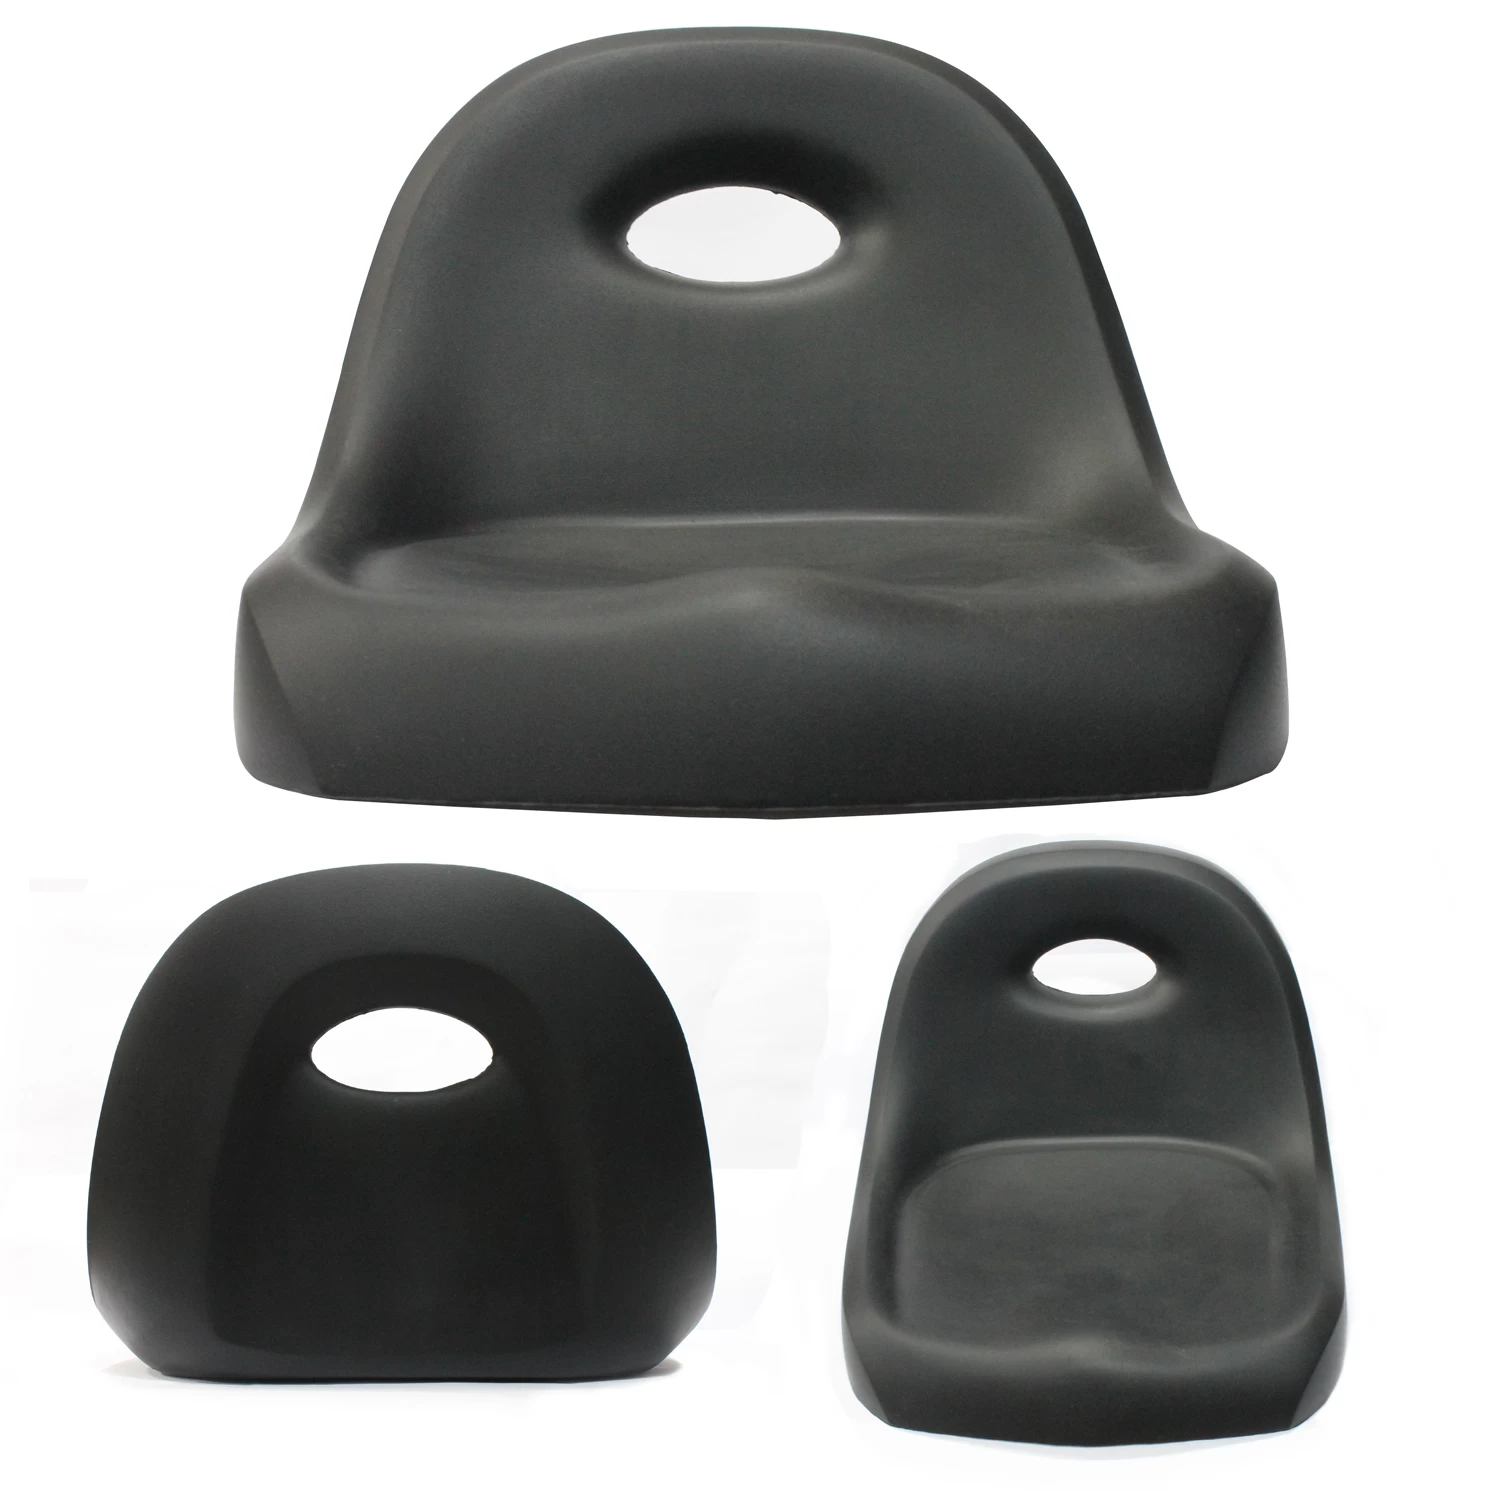 China Polyurethan Rücken Unterstützung Kissen für Auto, orthopädische Kissen, Rückenlehne Kissen, Büro-Stuhl Rücken stützen Kissen, PU High Density Stuhl Kissen Hersteller